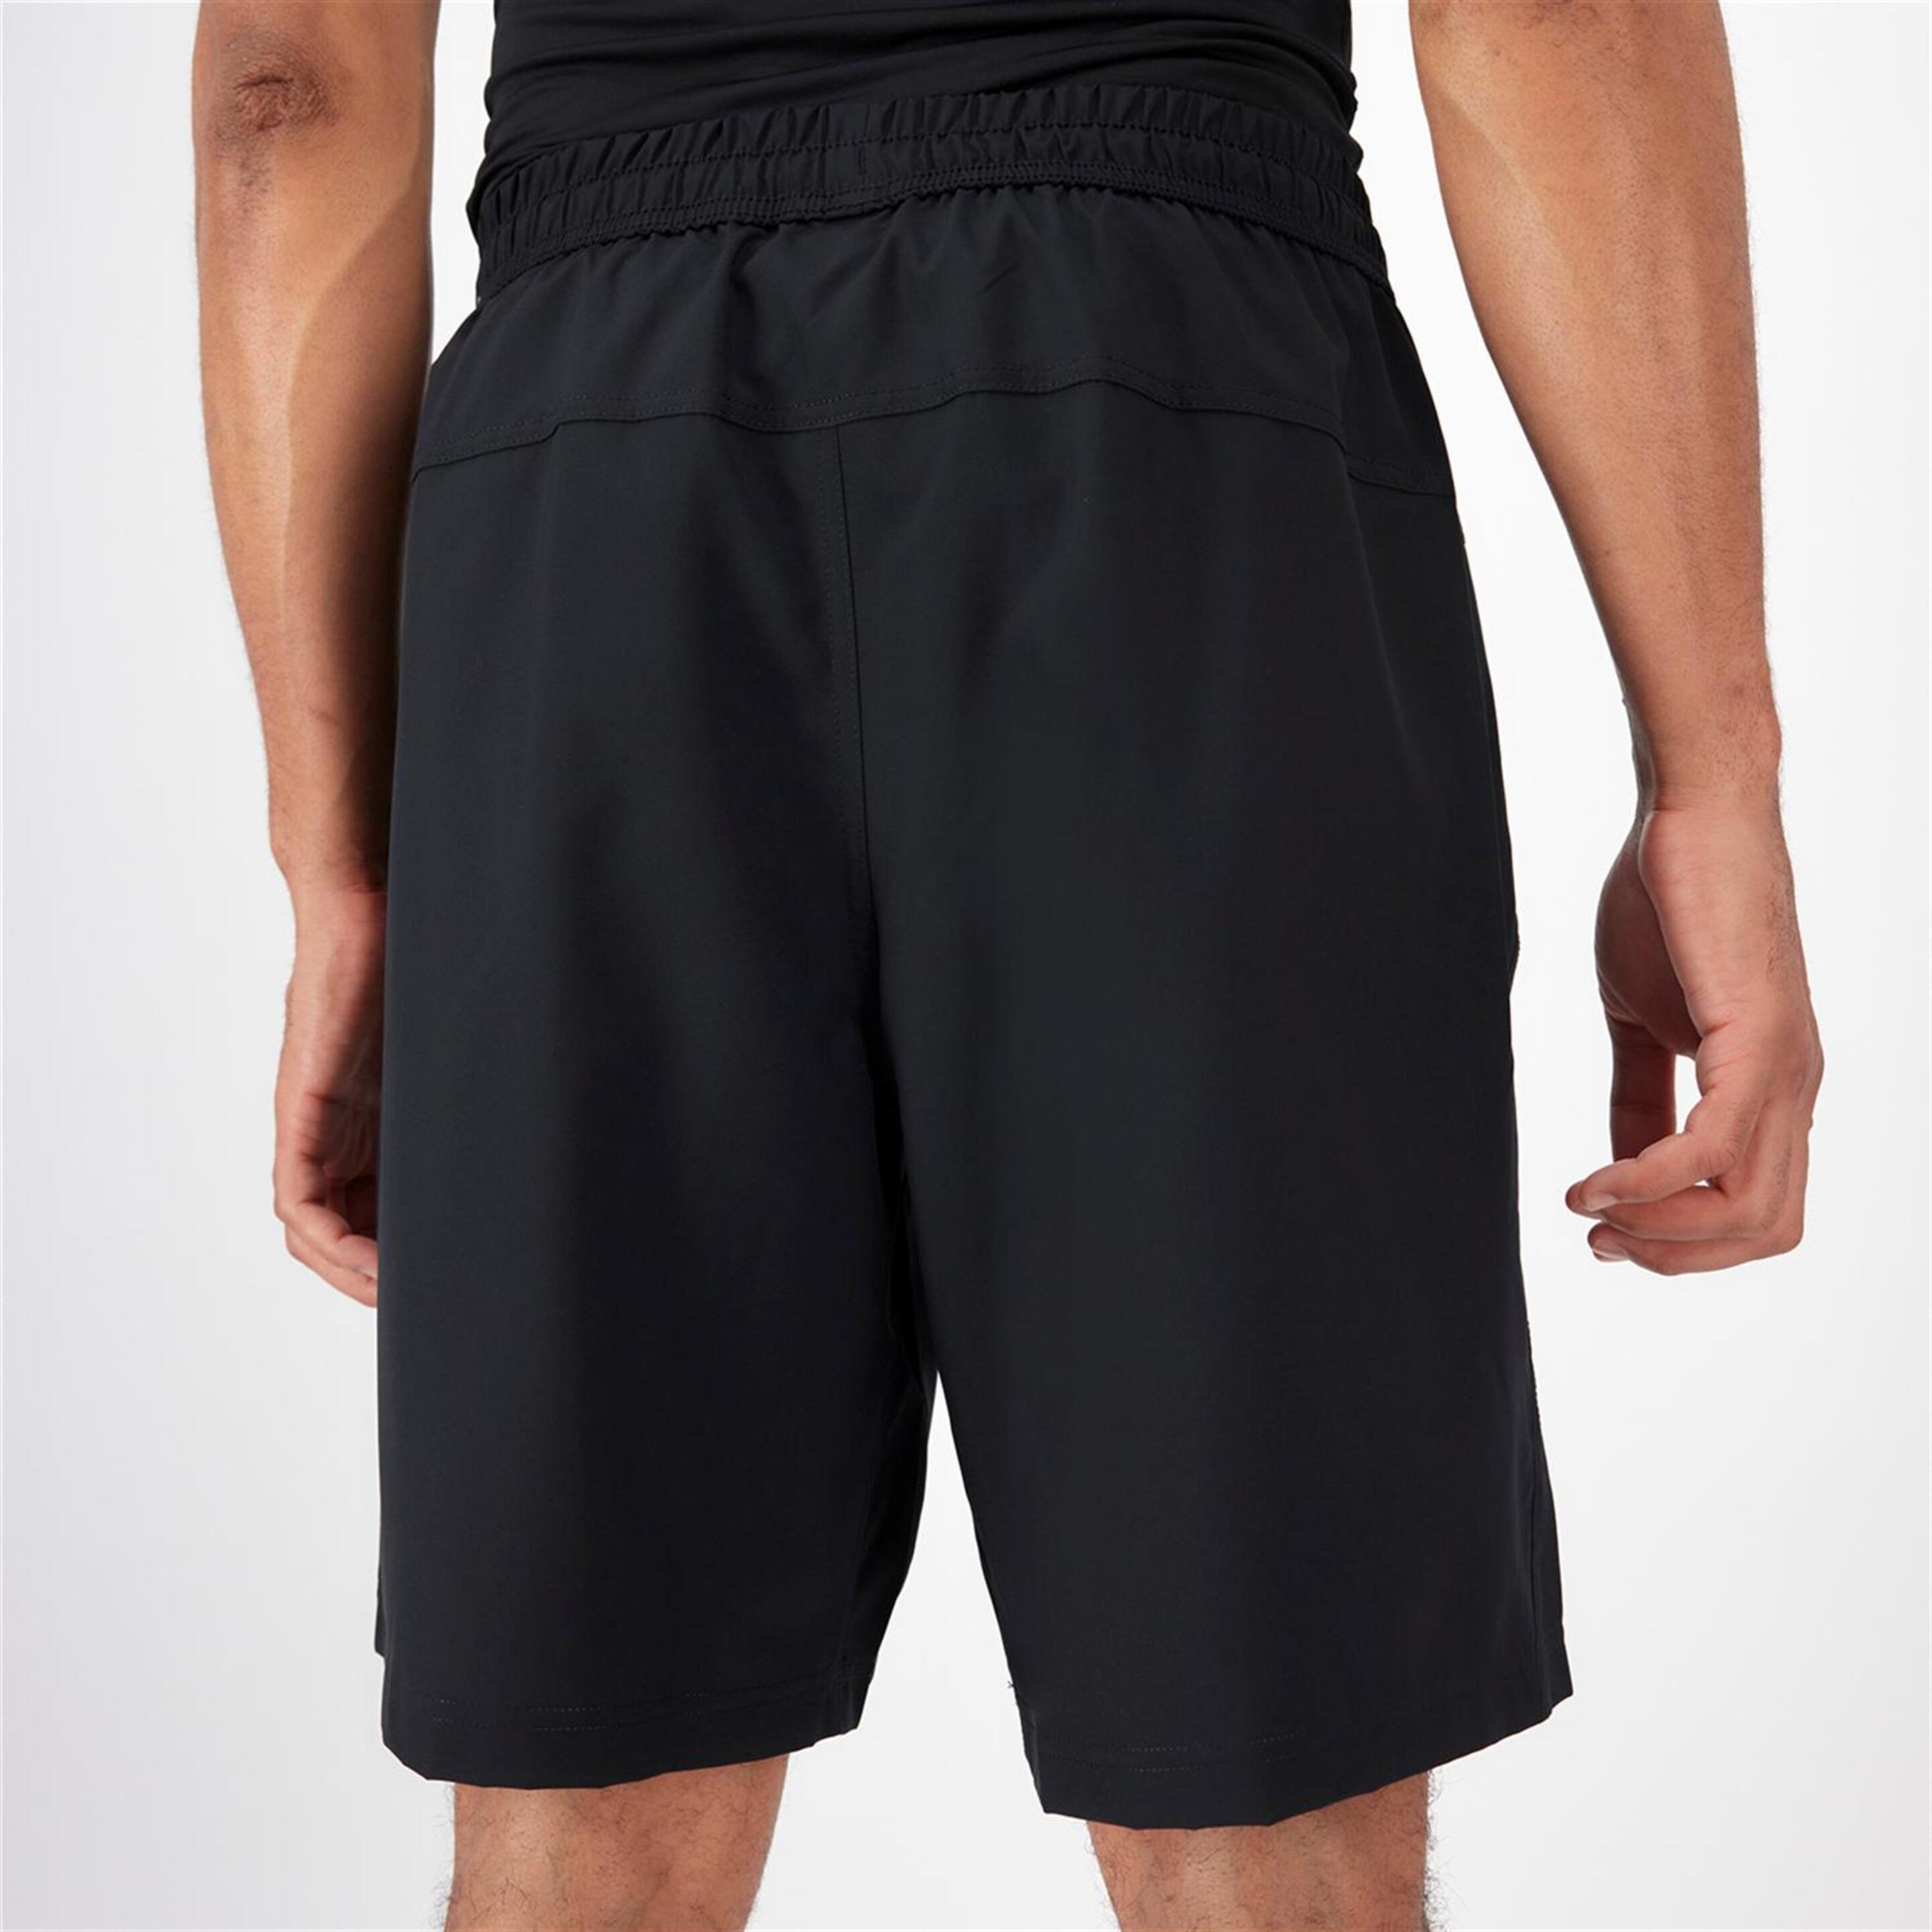 Pantalón Nike - Negro - Pantalón Running Hombre